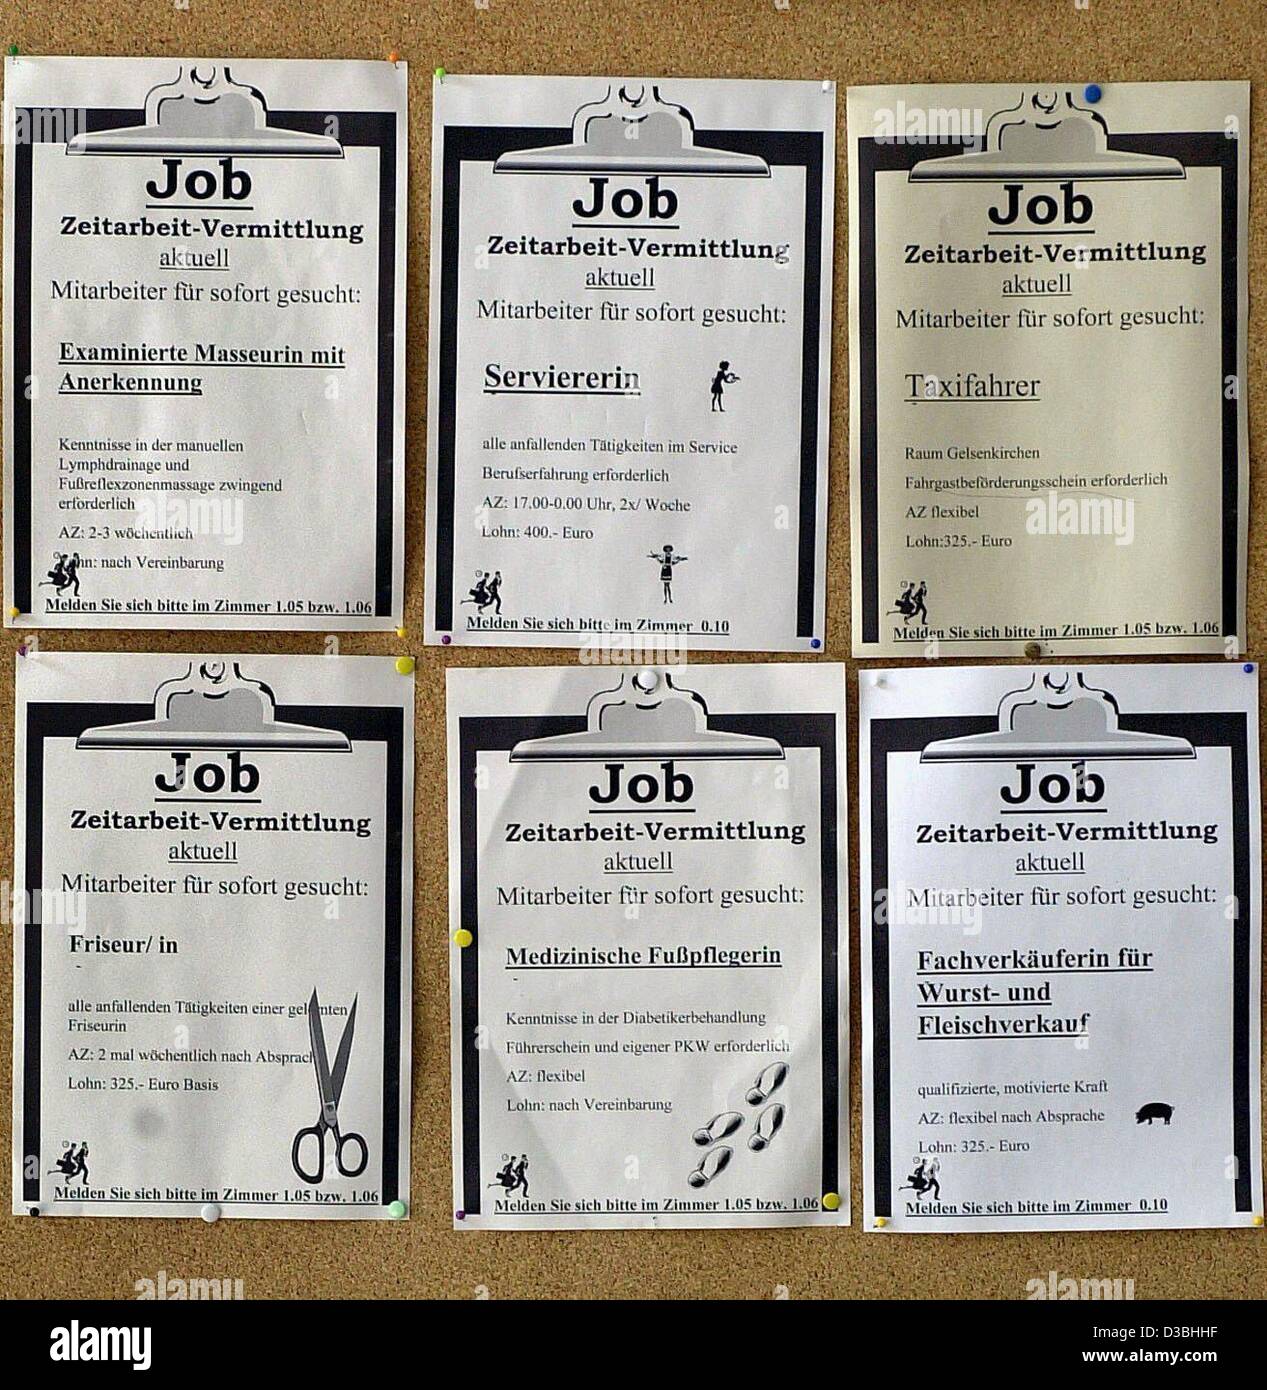 (Dpa) - wirbt ein schwarzes Brett für Stellenangebote, Zeitarbeit Jobs in der Ortsgruppe der Bundesagentur für Arbeit, Gelsenkirchen, Deutschland, 2. Juni 2003. Die Zahl der Arbeitslosen bleibt auf ein Rekordhoch für den Monat Mai. Mit mehr als 4,4 Millionen Menschen von Arbeitsplätzen überschreiten die Zahlen der vorherigen Stockfoto